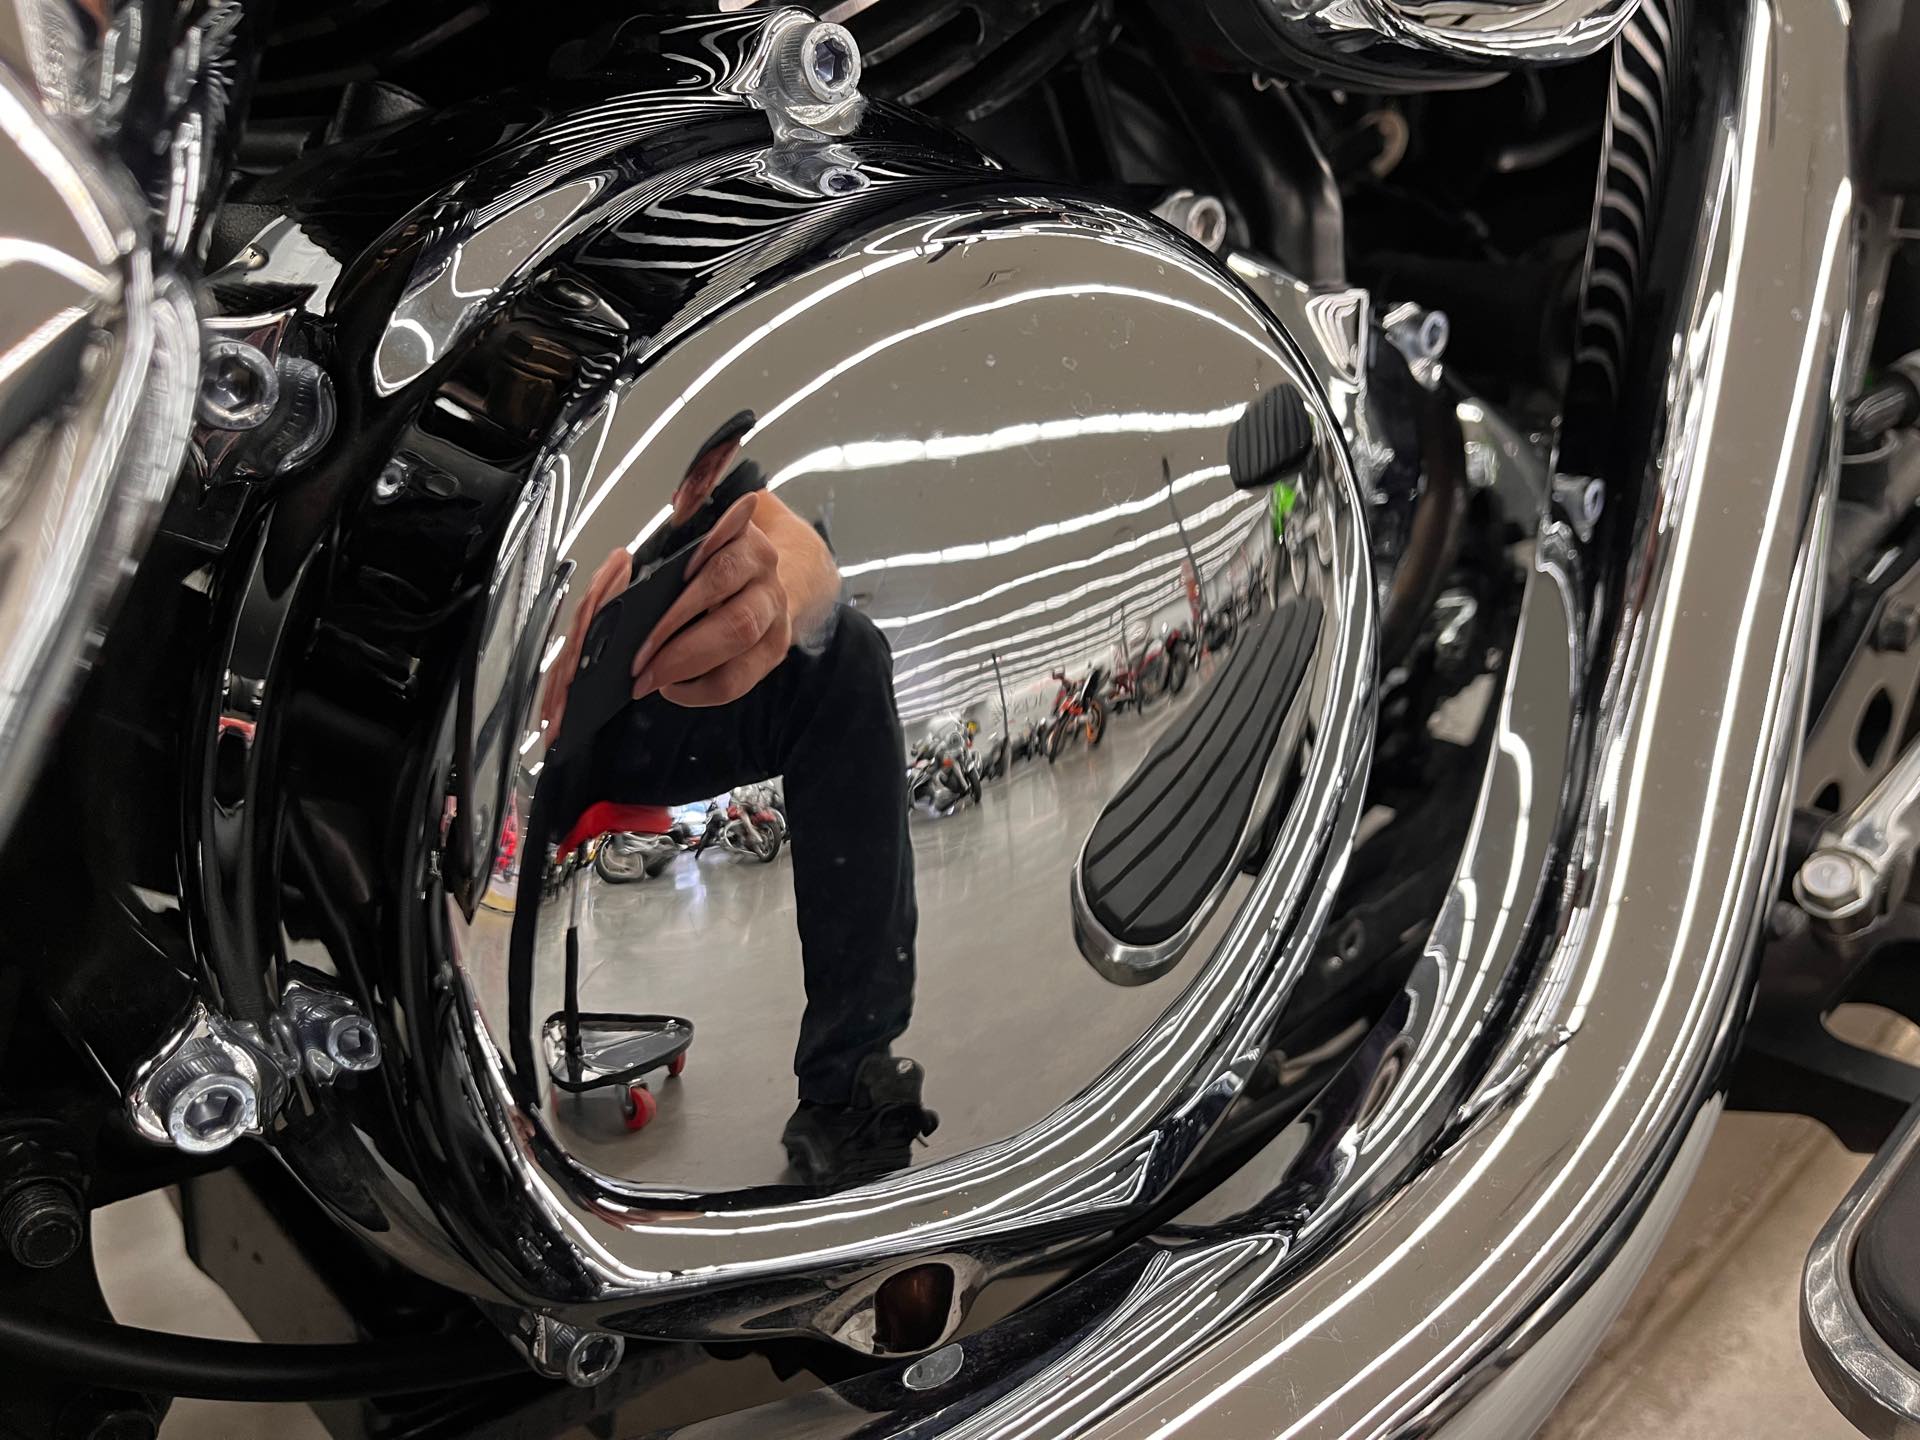 2015 Kawasaki Vulcan 900 Classic LT at Aces Motorcycles - Denver